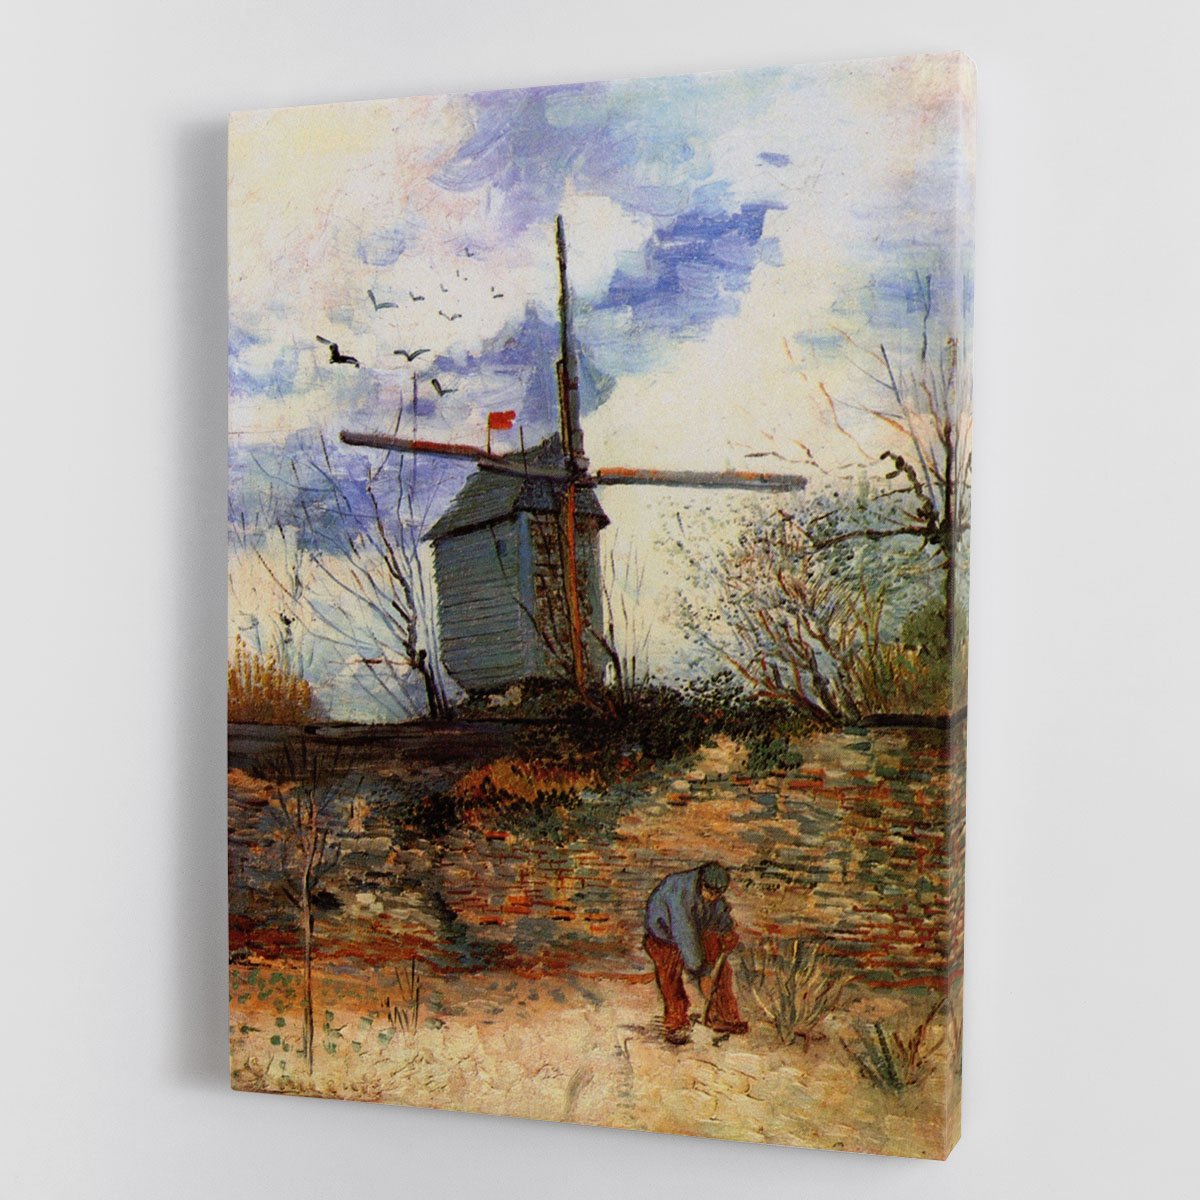 Le Moulin de la Galette 2 by Van Gogh Canvas Print or Poster